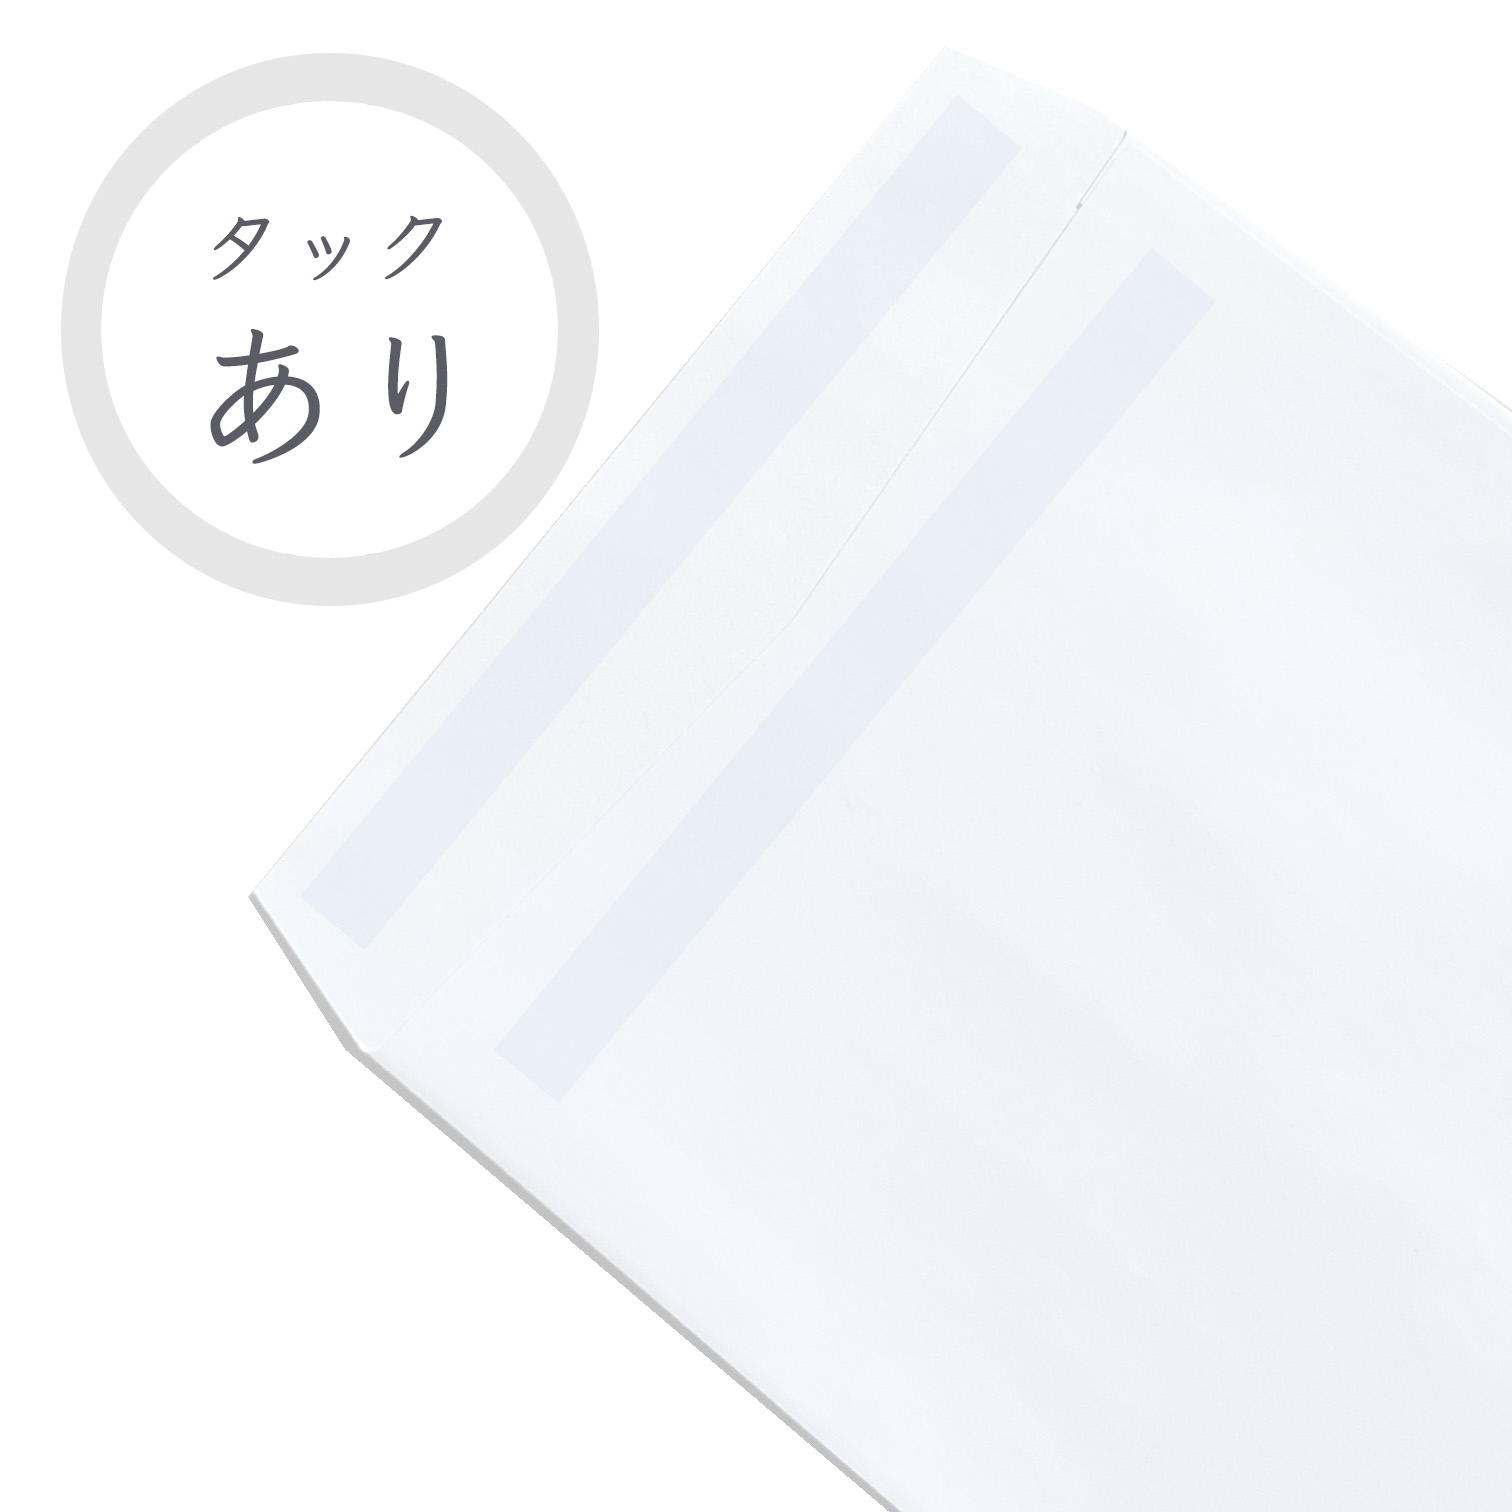 長3ホワイト封筒 70g/平米 タック付 1000枚 商品画像サムネイル5